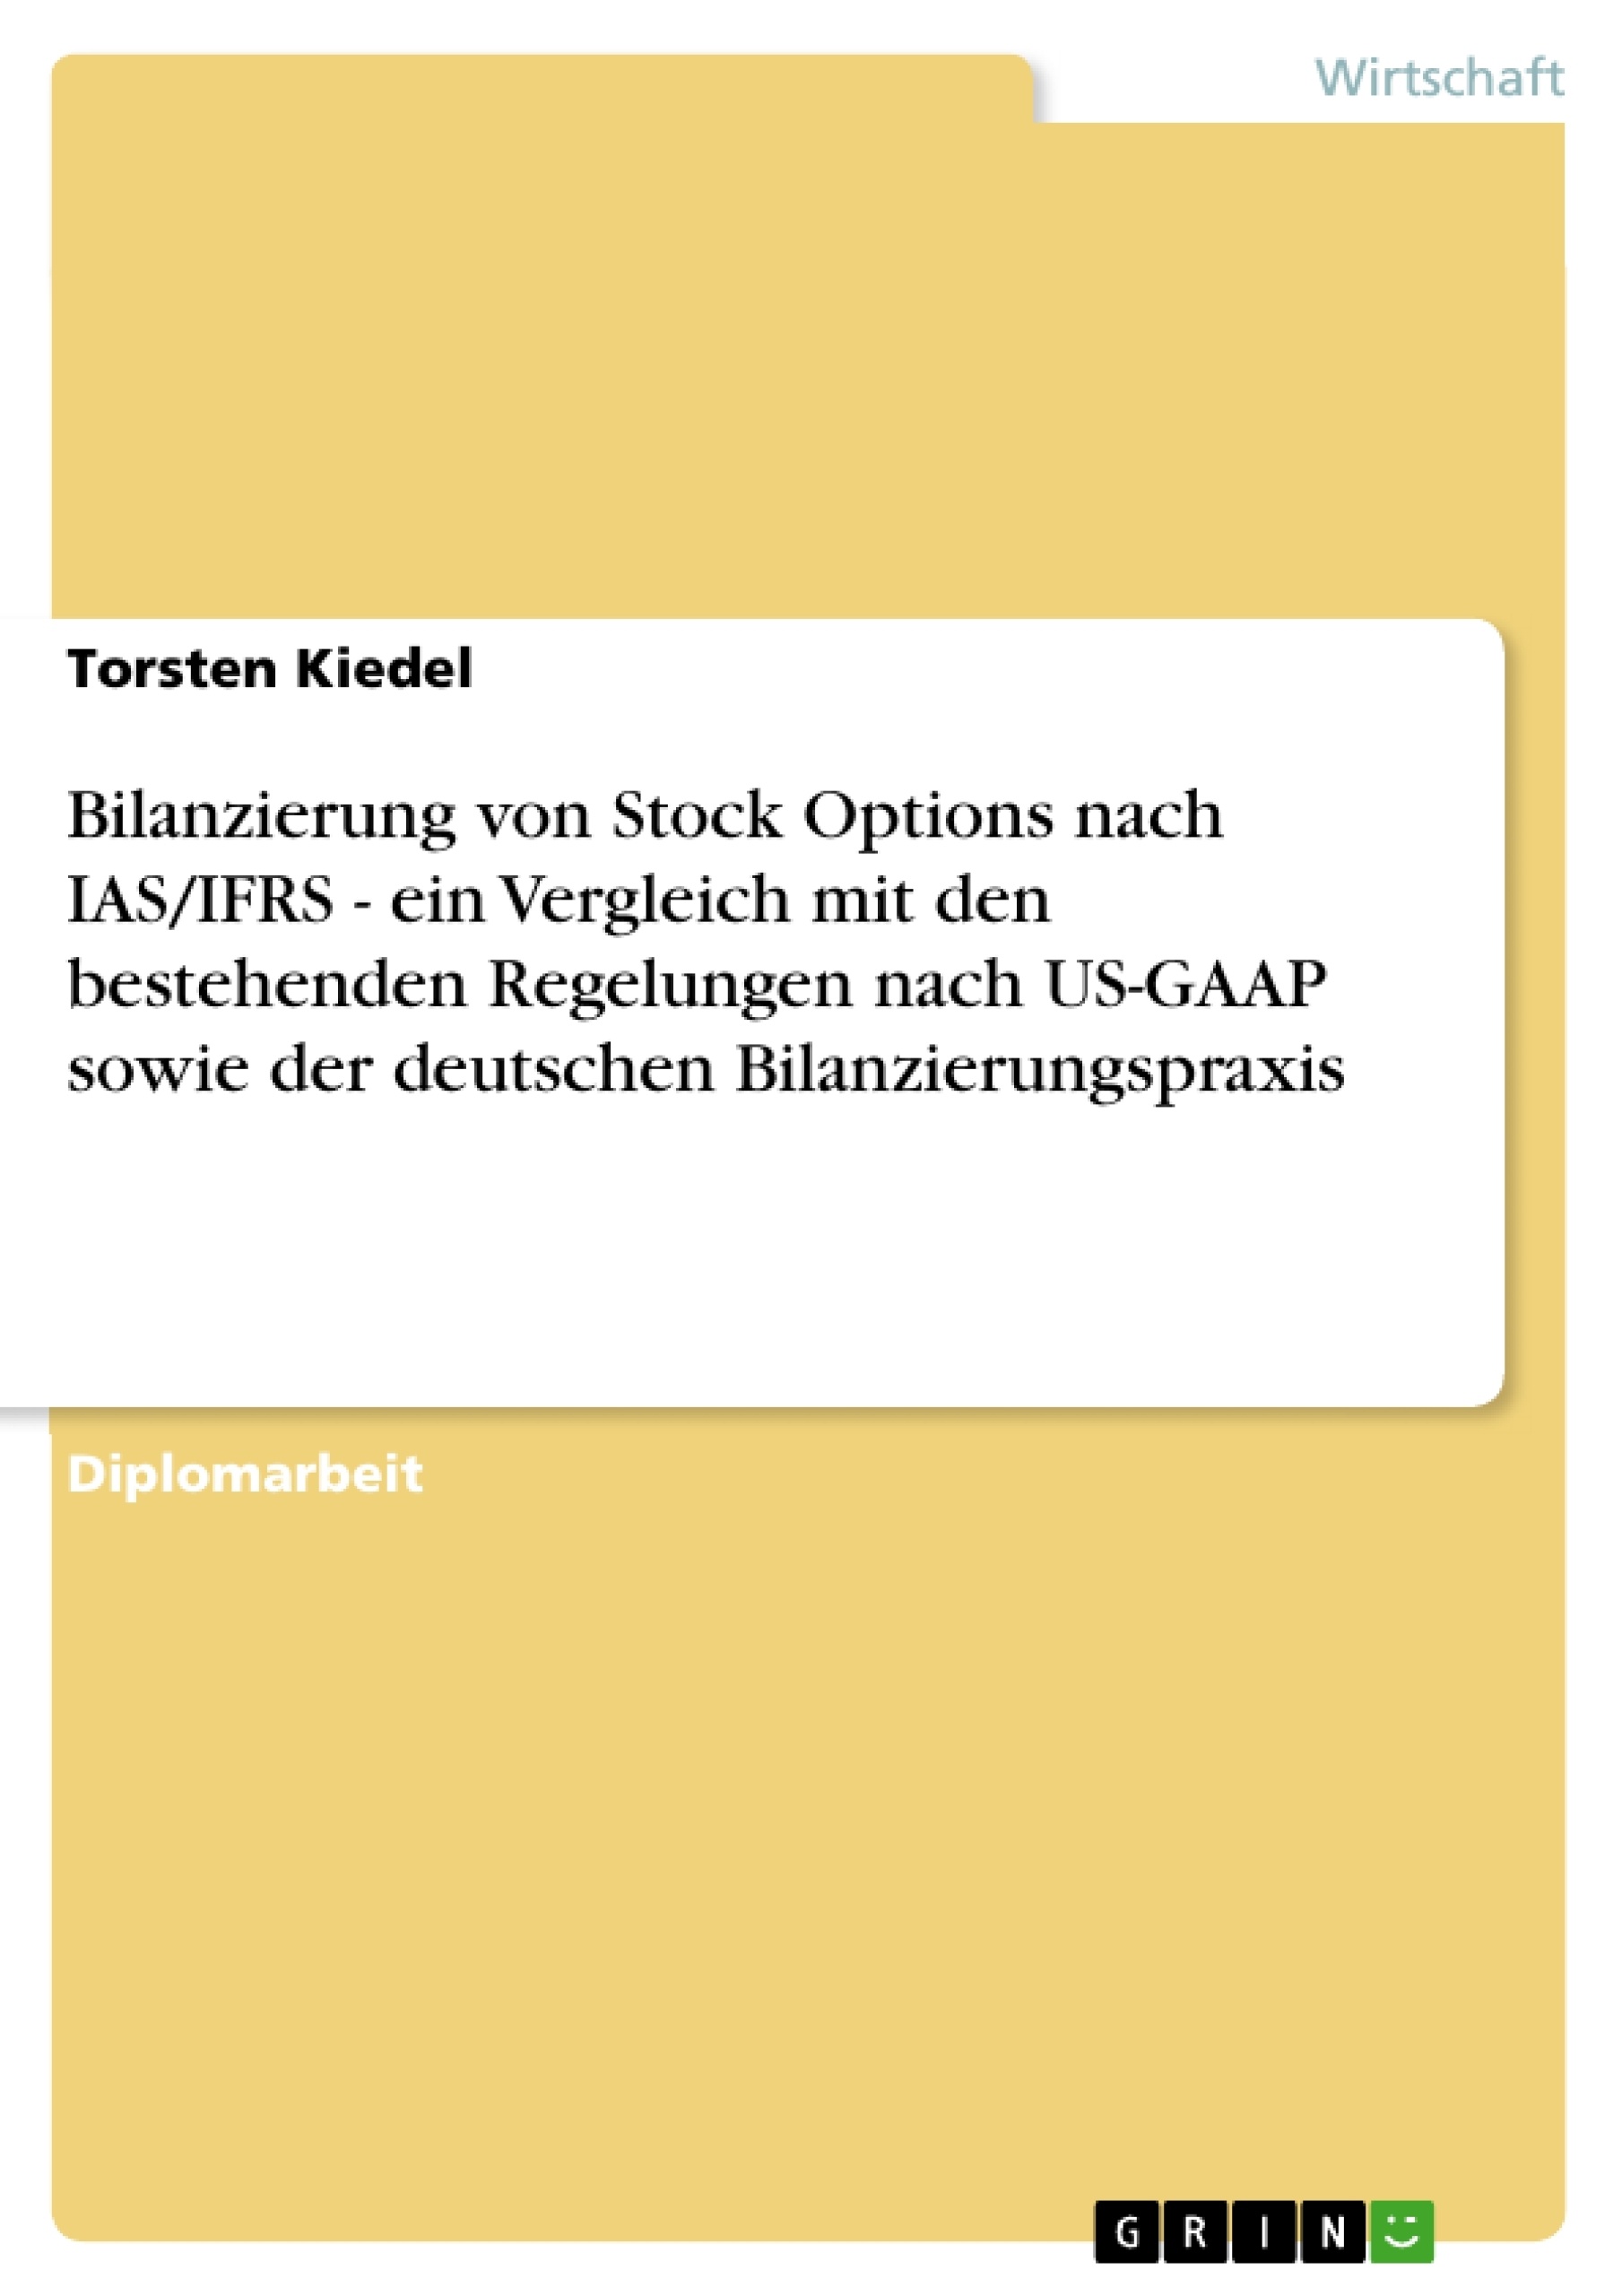 Titel: Bilanzierung von Stock Options nach IAS/IFRS - ein Vergleich mit den bestehenden Regelungen nach US-GAAP sowie der deutschen Bilanzierungspraxis